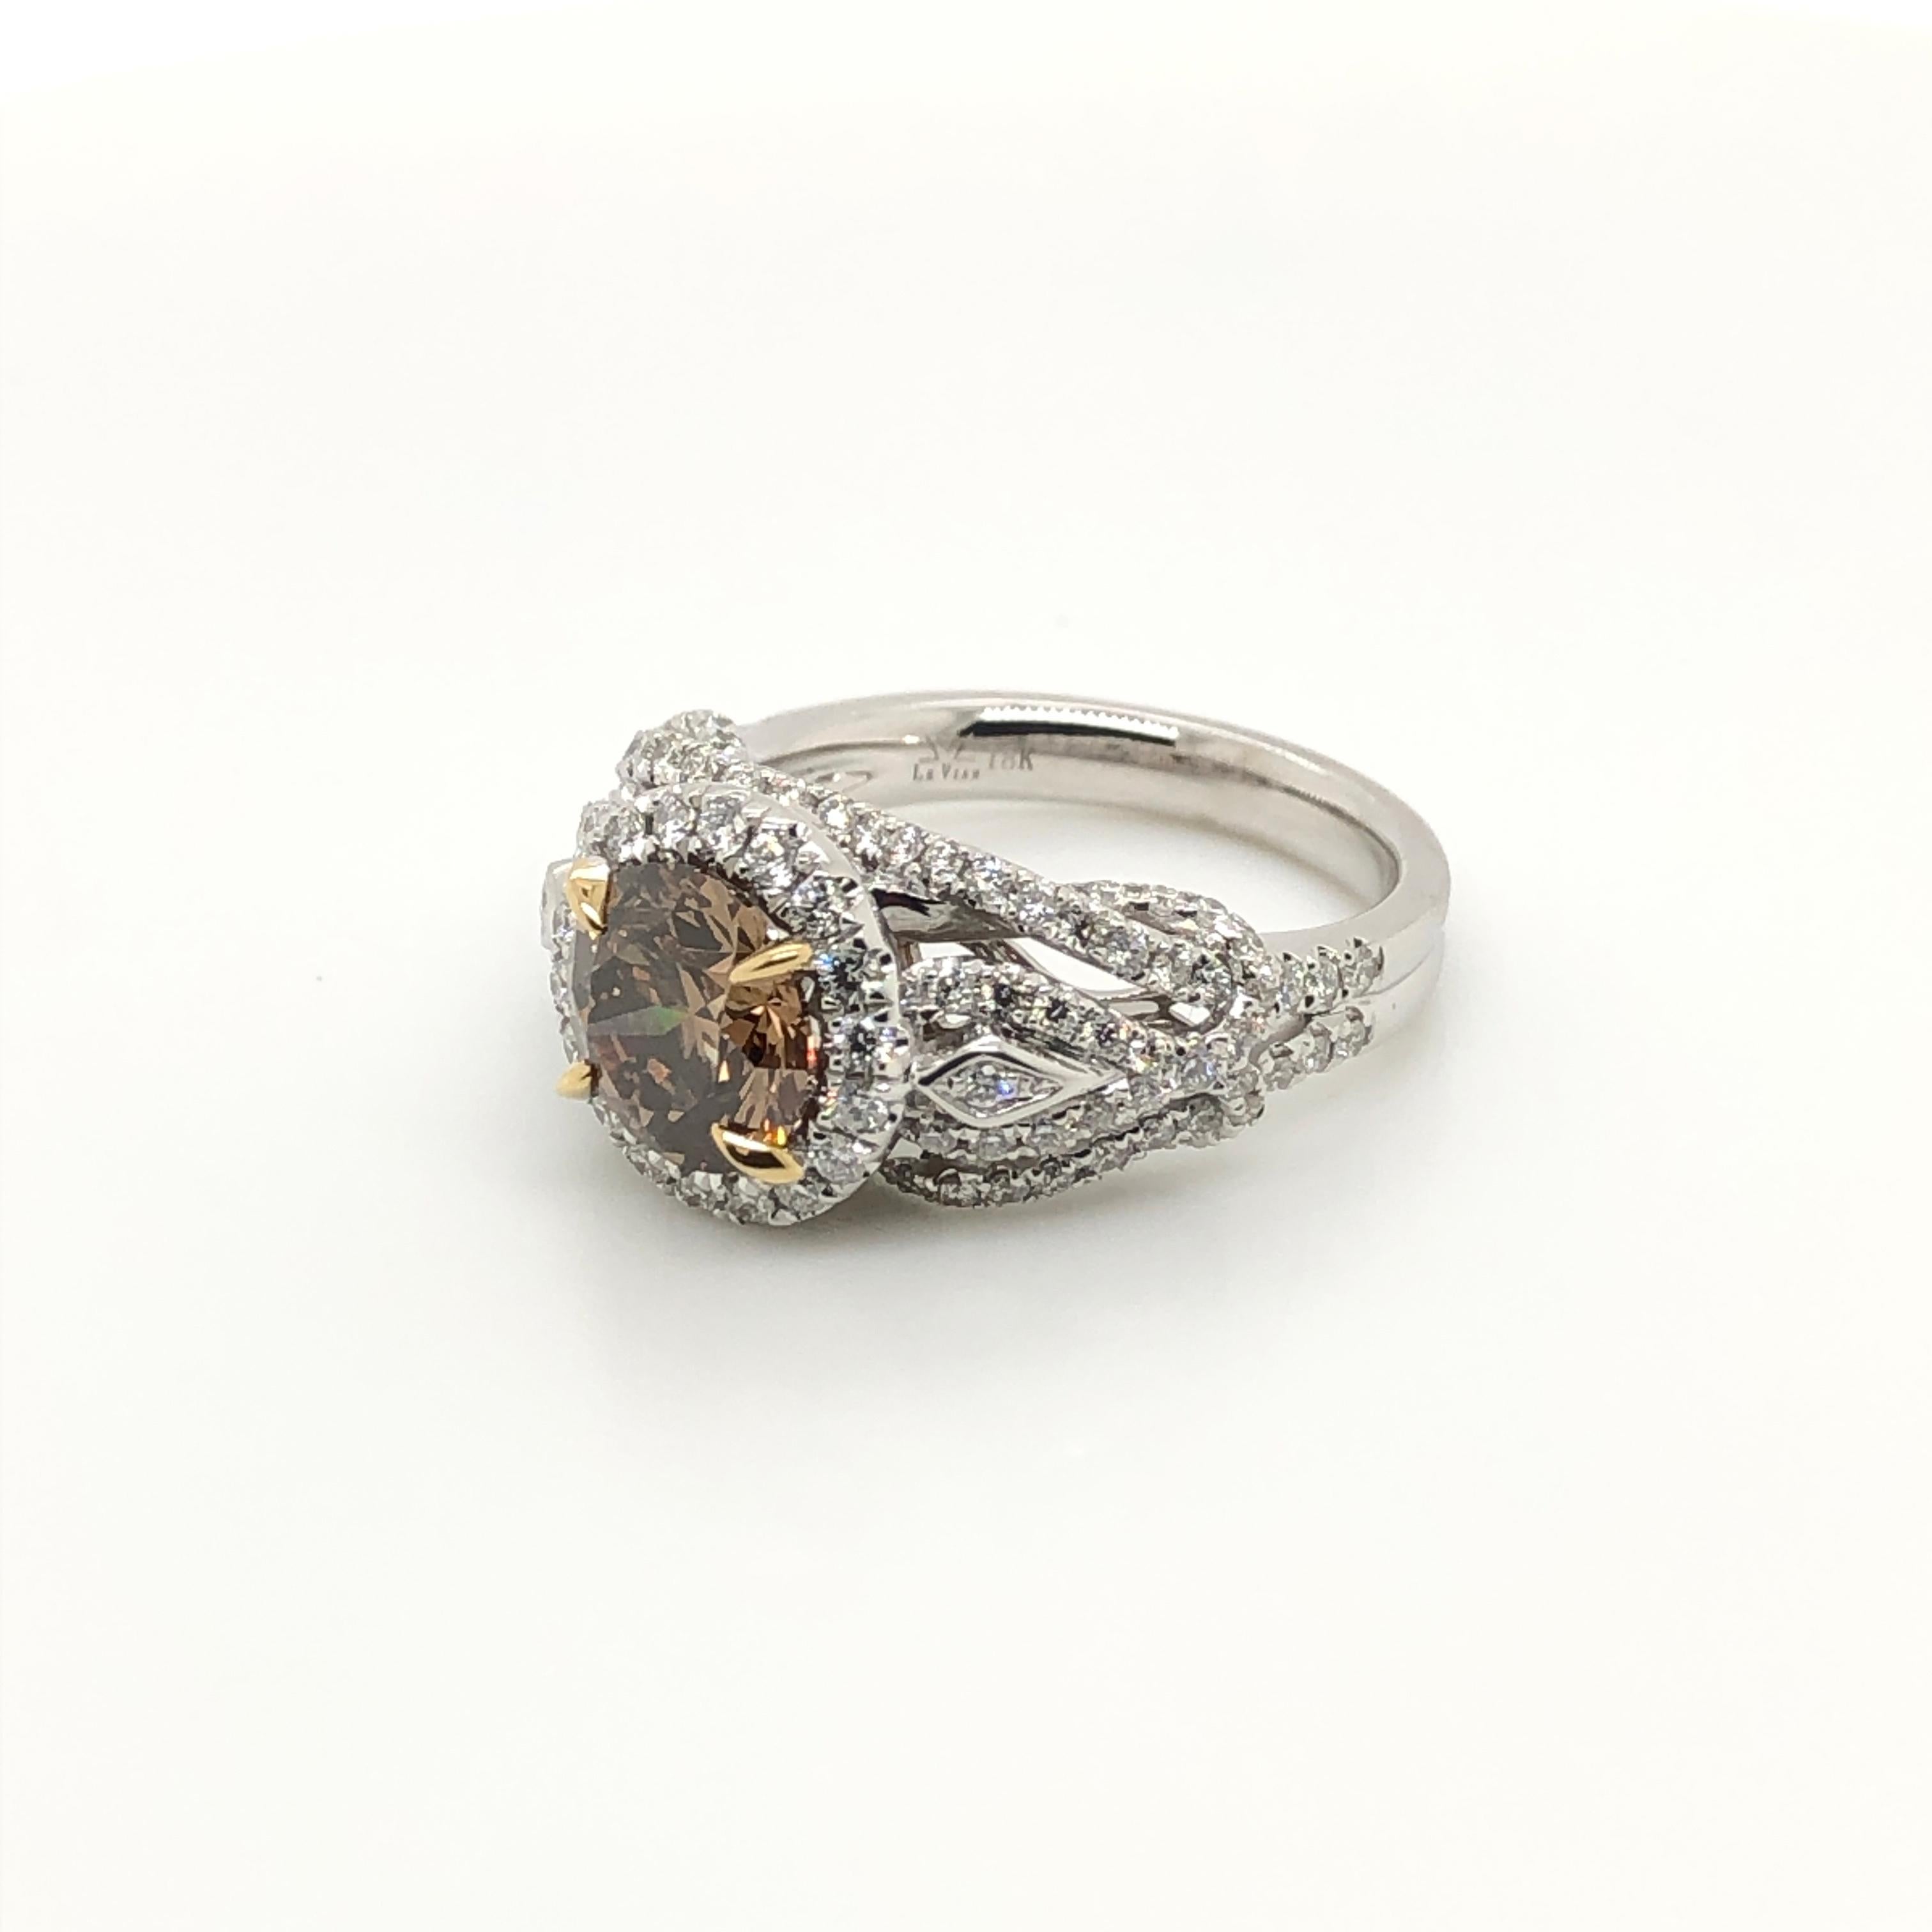 Doucement  sophistiquée, cette superbe bague de fiançailles en or 18k deux tons de Le Vian Couture présente un diamant de 2 carats de couleur chocolat niché dans un halo de diamants de couleur vanille, avec des détails exquis de diamants étincelants